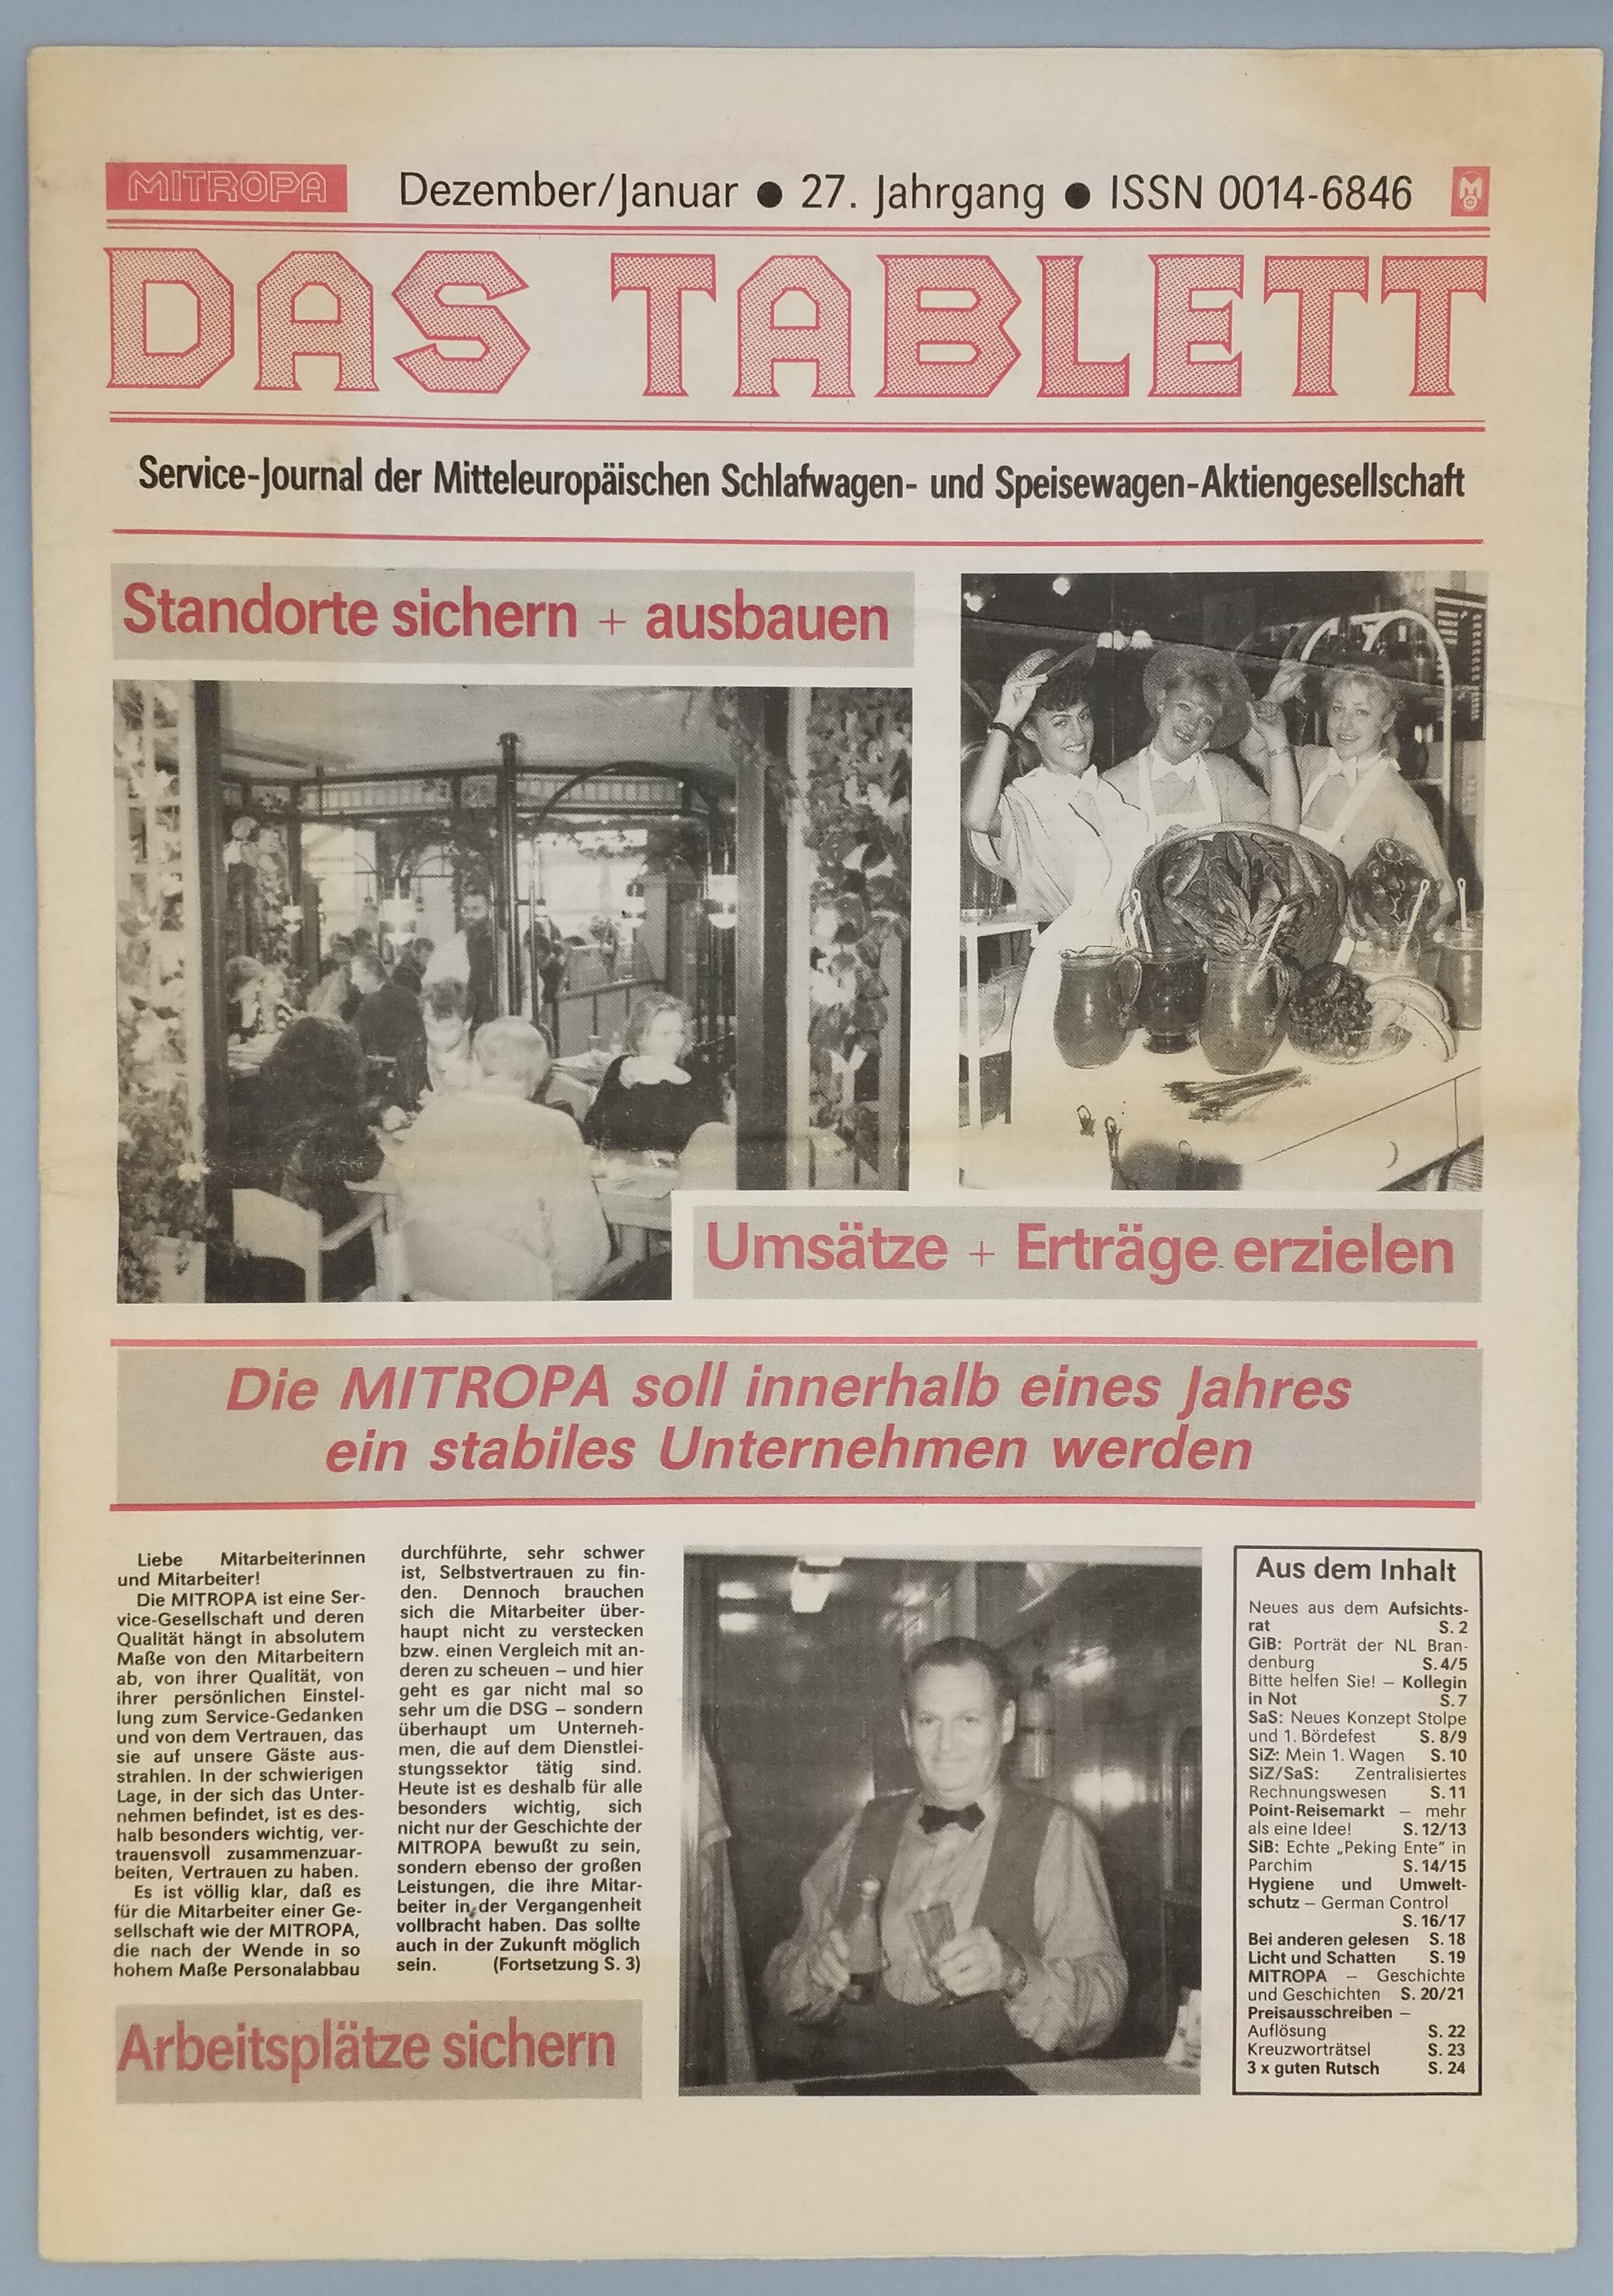 Zeitung "Das Tablett" (Mobile Welten e.V. CC BY-SA)